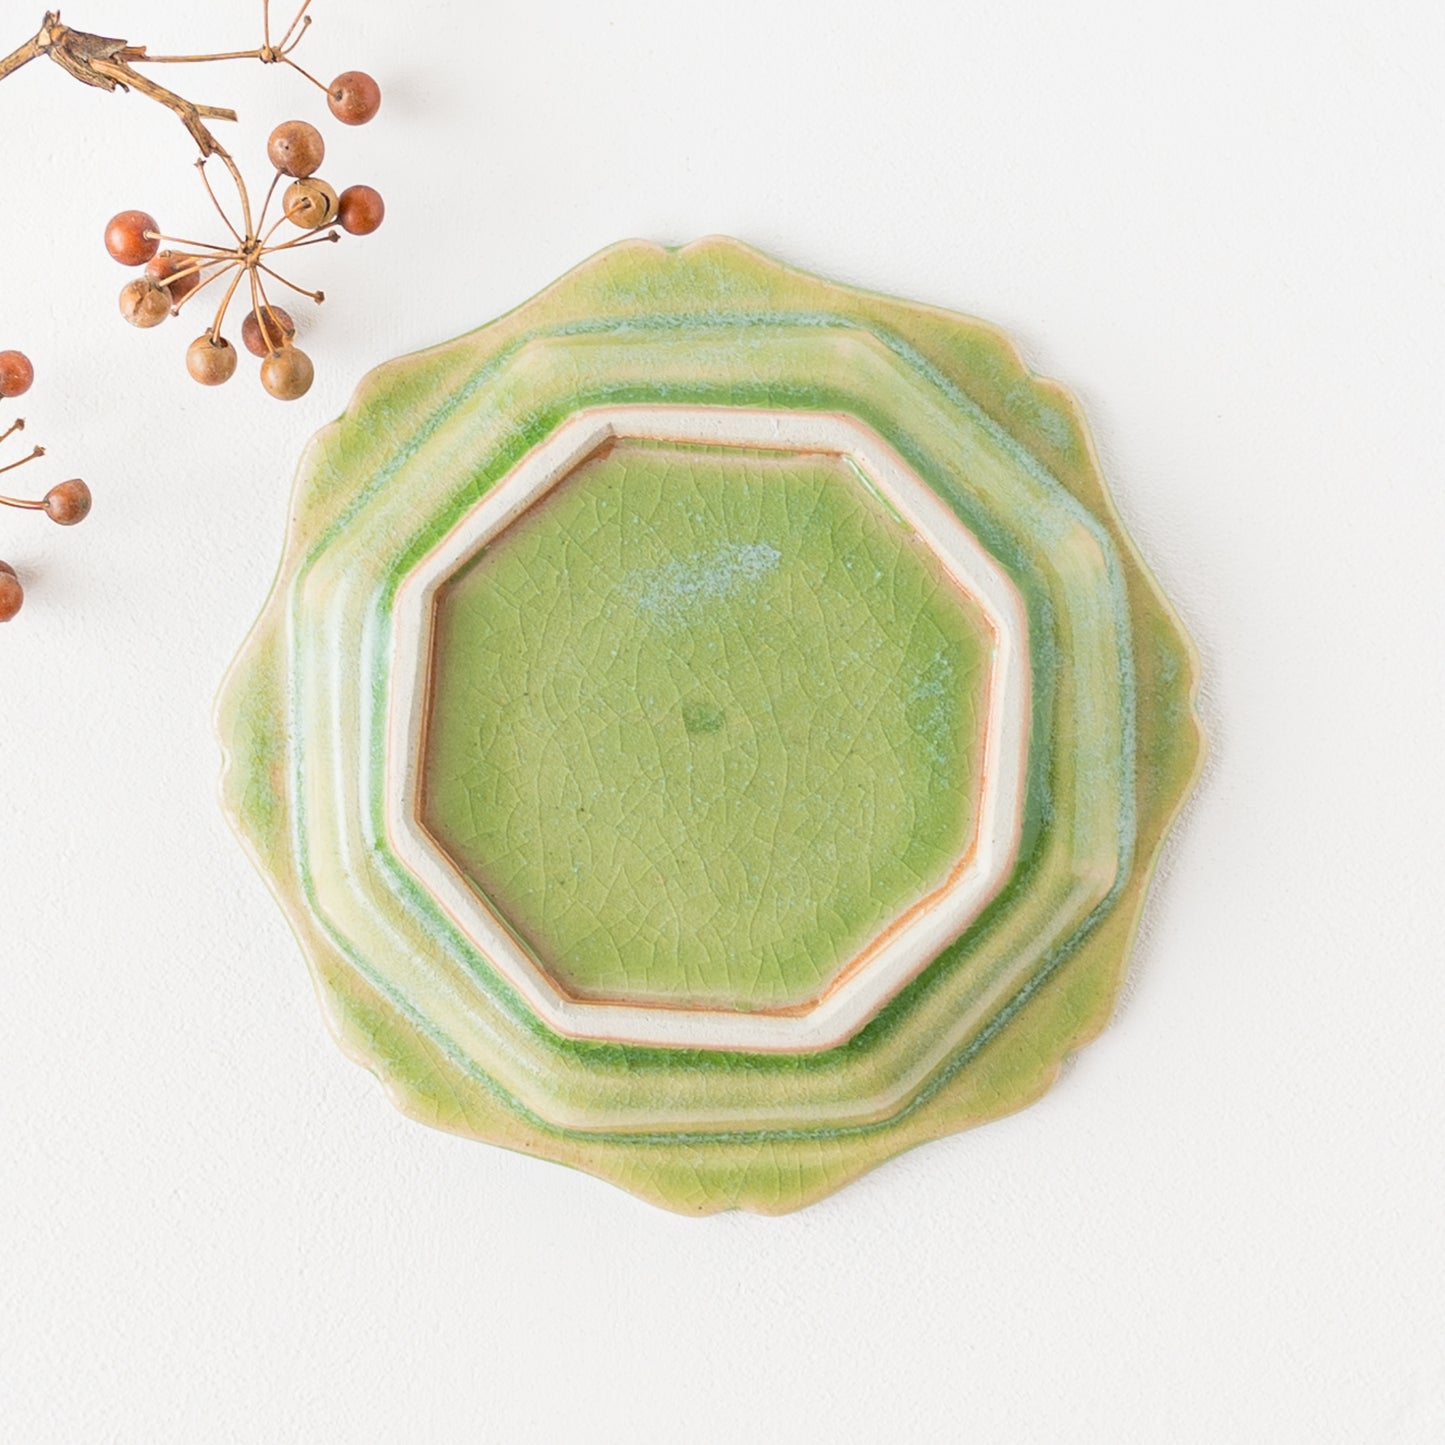 山葵釉は美しい渡辺信史さんのねじり八角皿